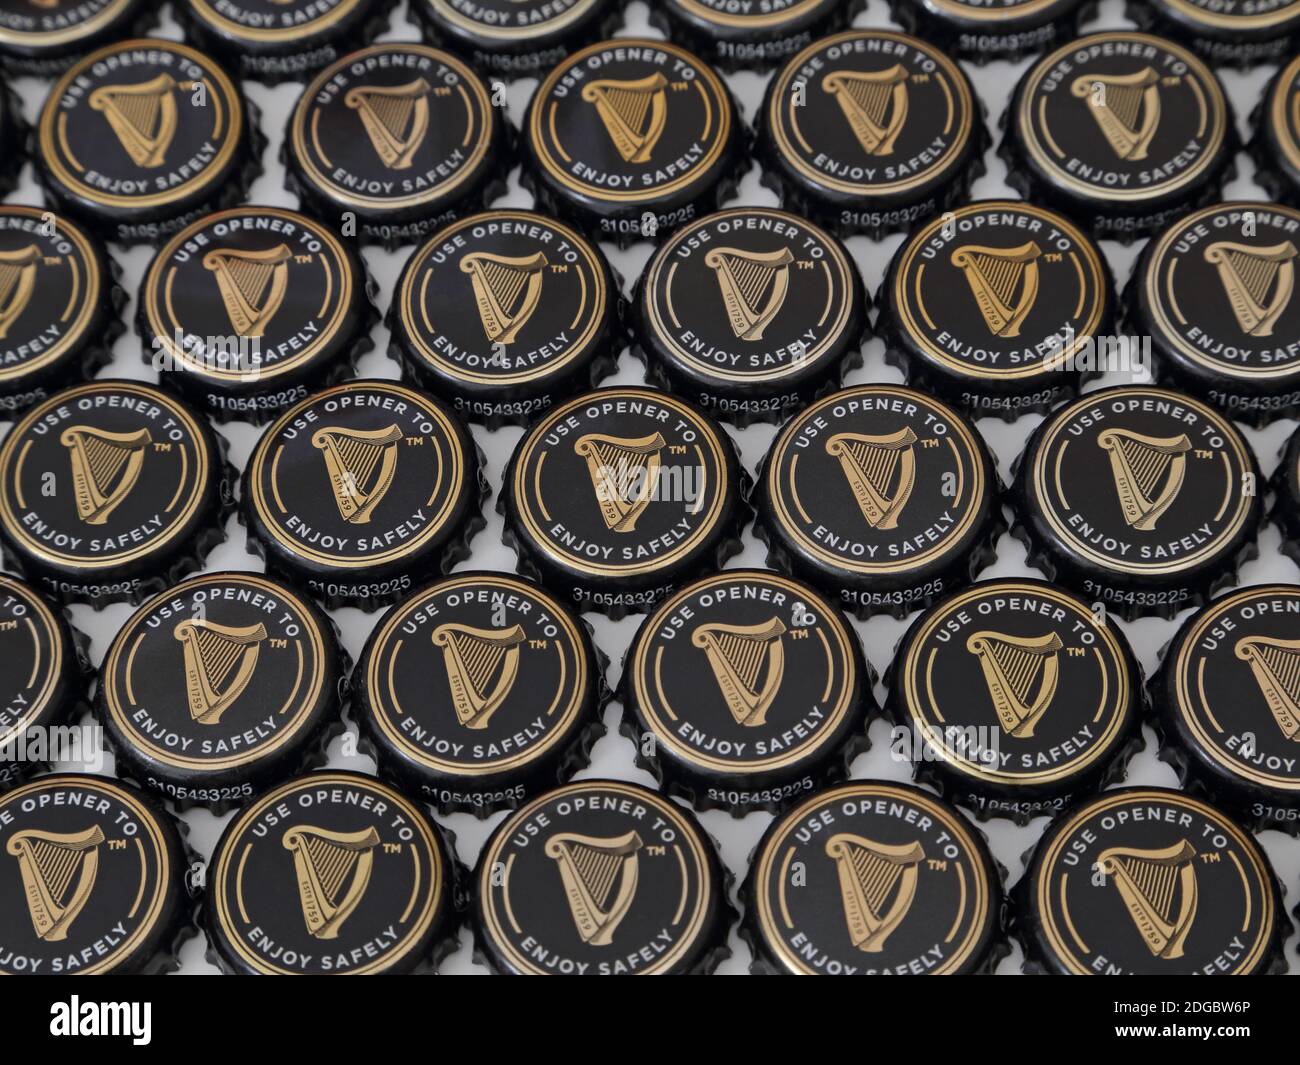 Una collezione di tappi per bottiglie di birra Guinness è mostrata disposta in un display piatto, visto ad angolo negli anni 2020. Solo per usi editoriali. Foto Stock